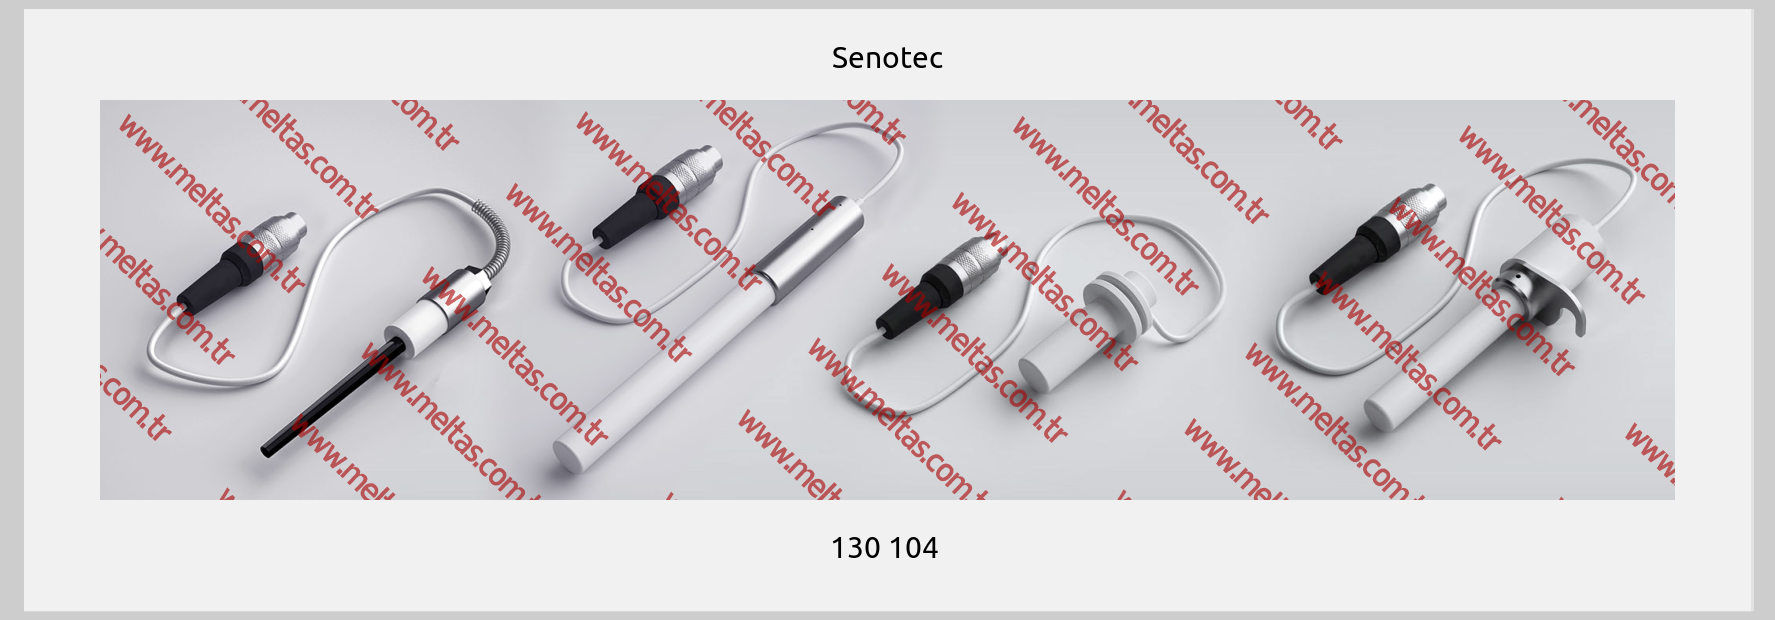 Senotec - 130 104 